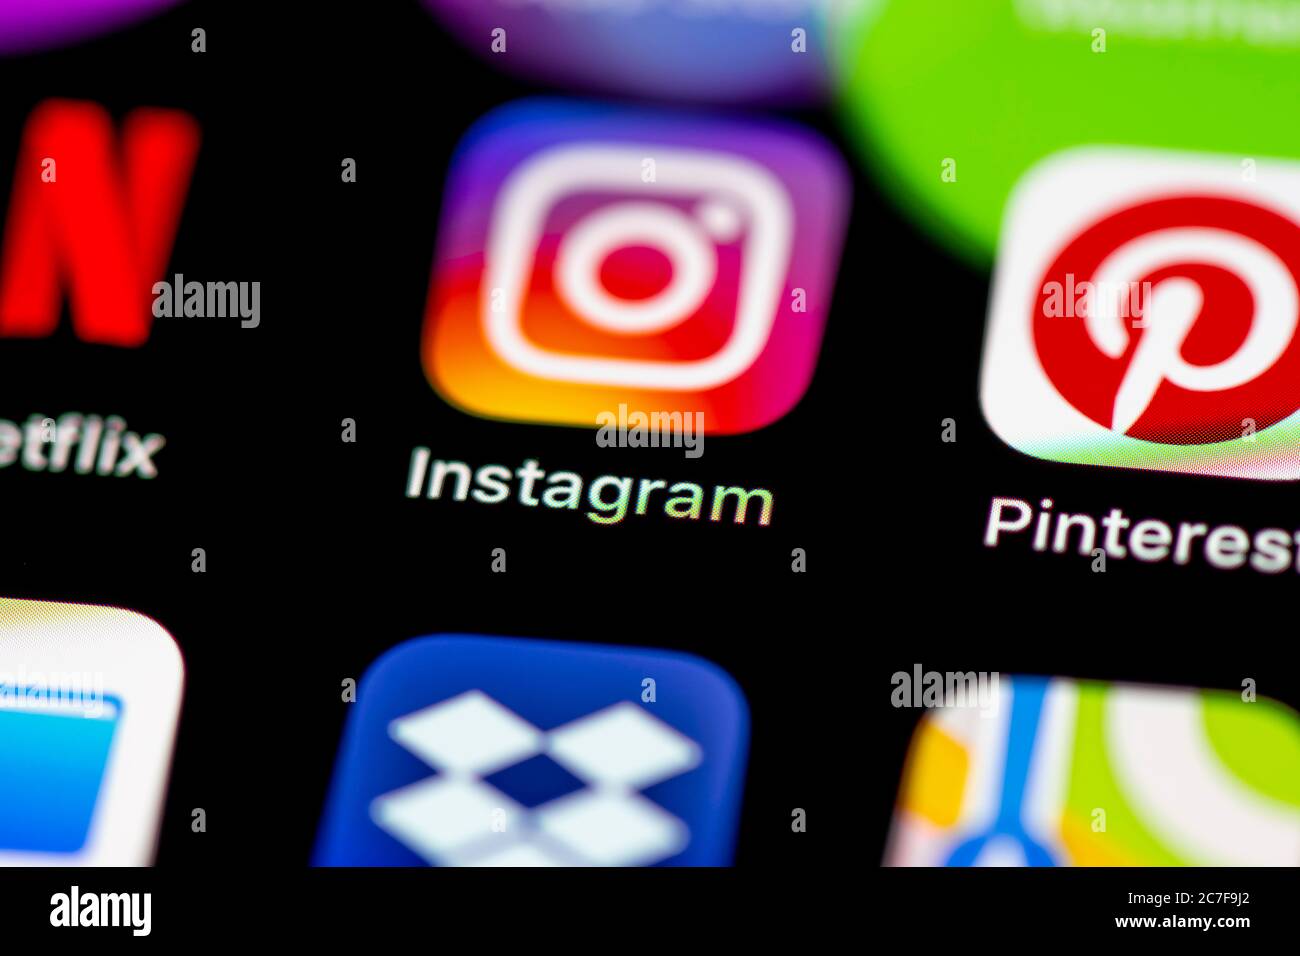 Icône Instagram, application de réseaux sociaux, icônes d'application sur un écran de téléphone mobile, iPhone, smartphone, gros plan Banque D'Images